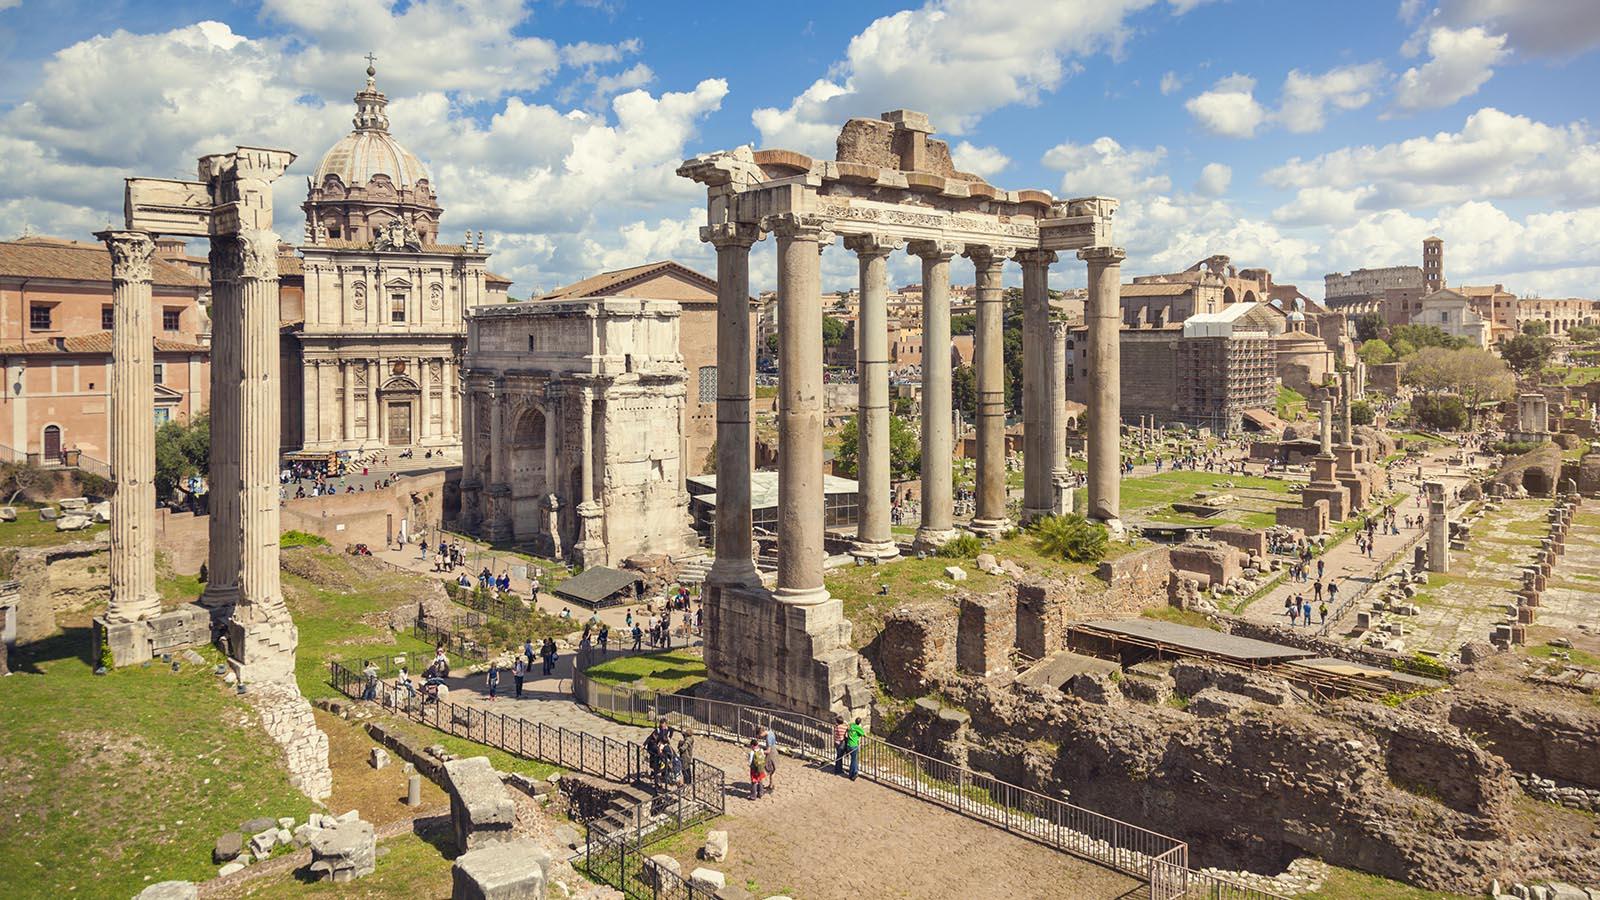 Forum Romanum in Rome, Italy.